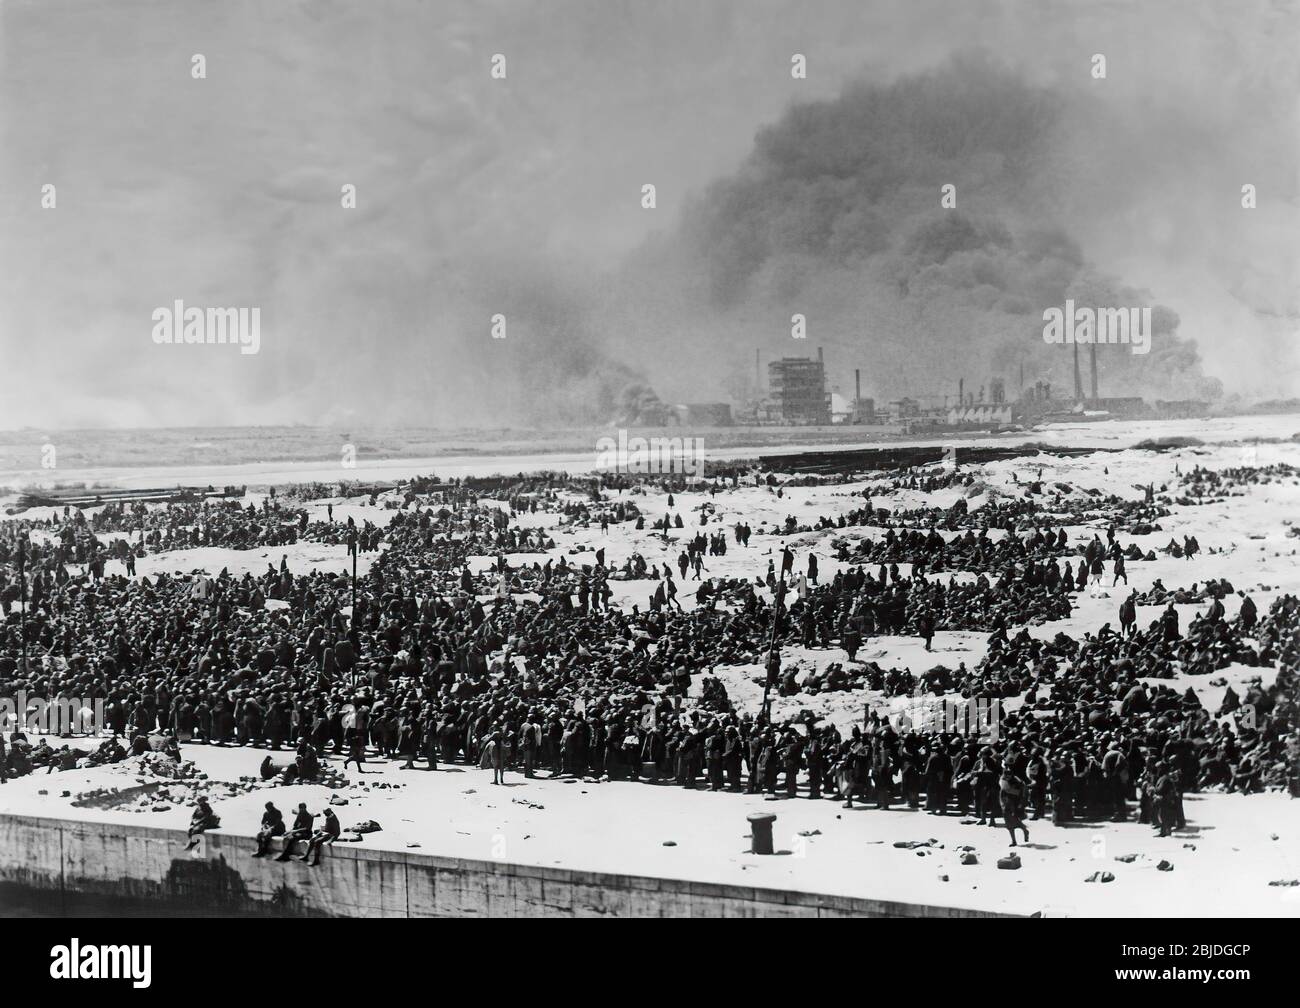 L'evacuazione di Dunkerque, detta operazione Dynamo e nota anche come Miracolo di Dunkerque, fu l'evacuazione dei soldati alleati durante la seconda guerra mondiale dalle spiagge e dal porto di Dunkerque, nel nord della Francia, tra il 26 maggio e il 4 giugno 1940. Foto Stock